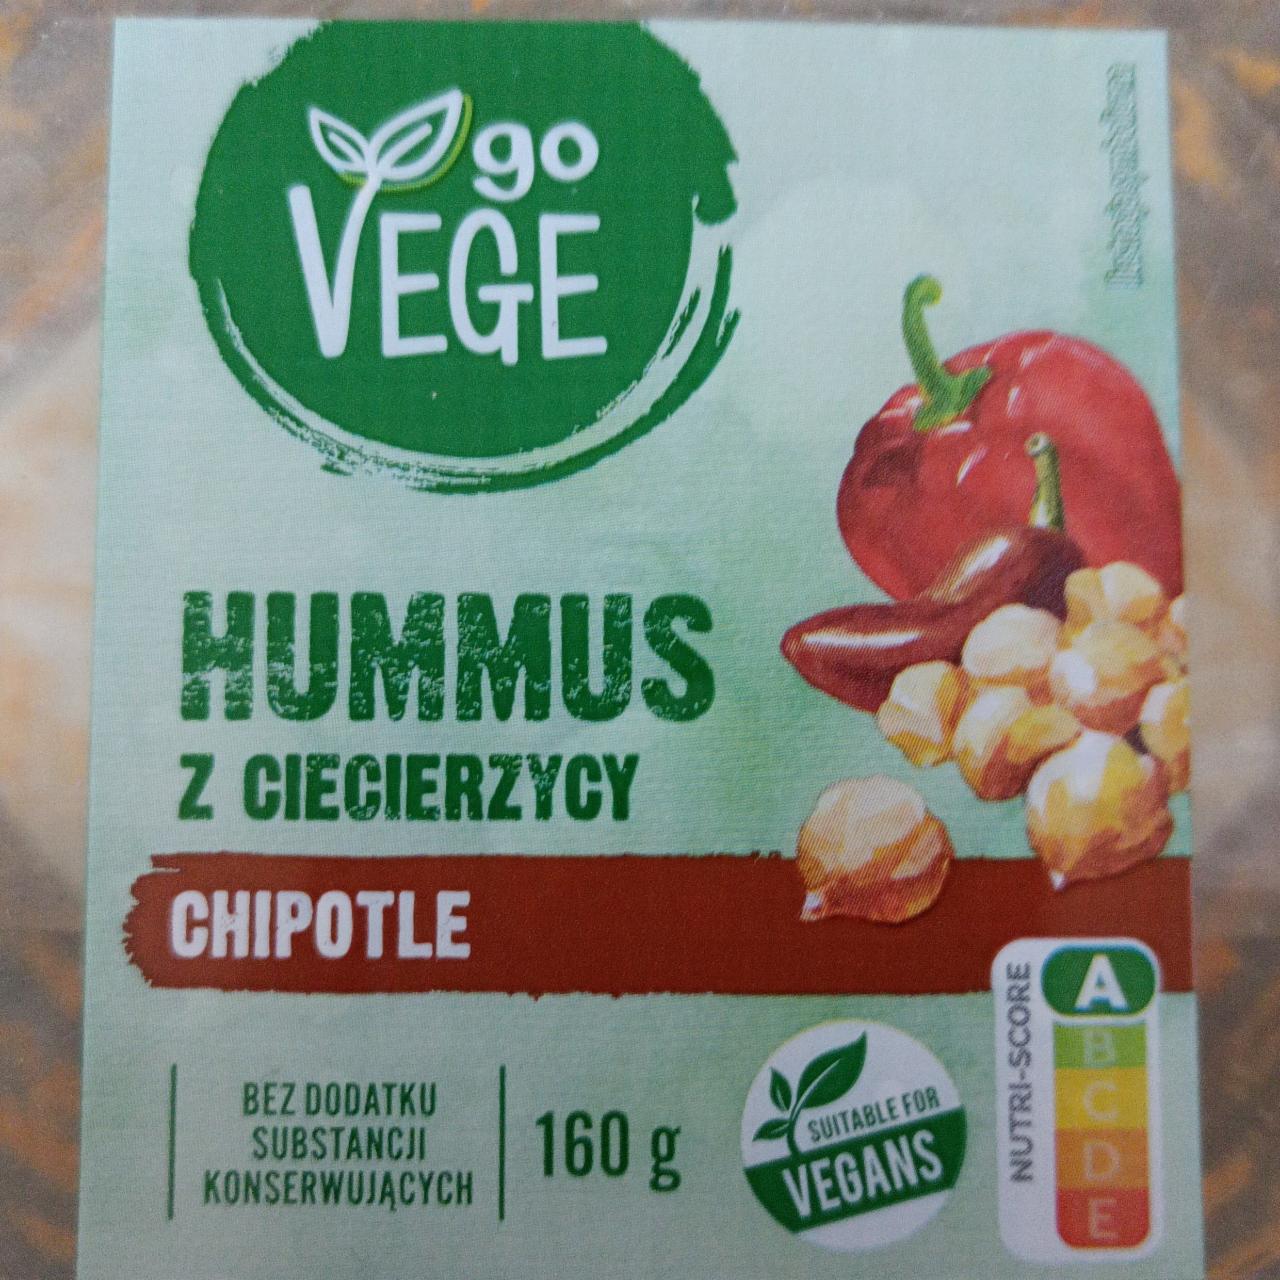 Zdjęcia - Hummus z ciecierzycy CHIPOTLE go VEGE